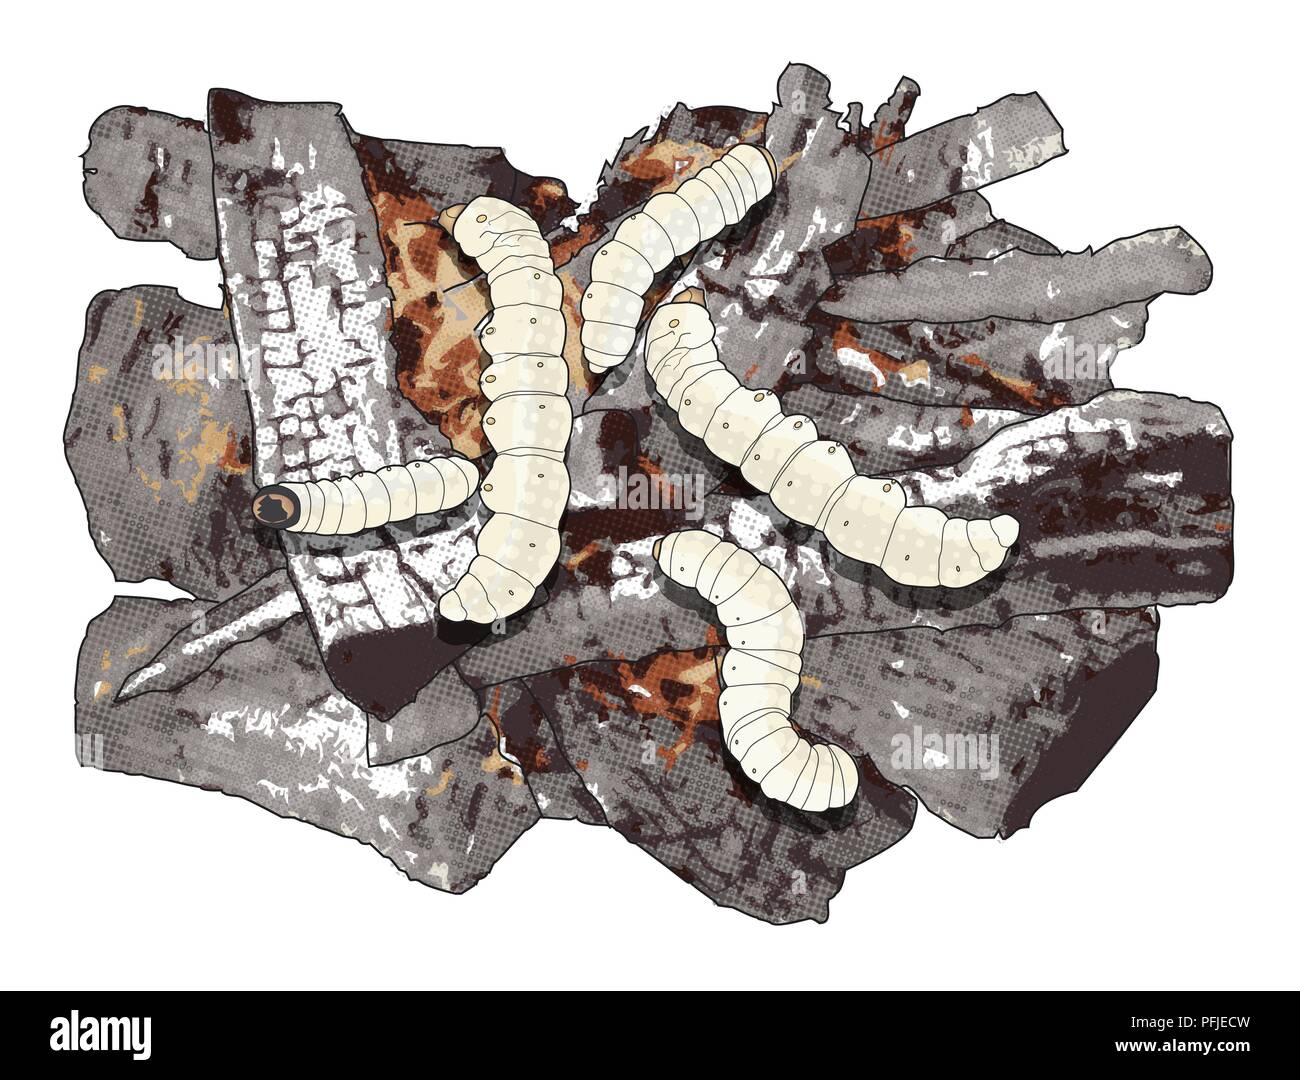 Illustration numérique de larves witchetty griller sur les cendres chaudes Banque D'Images